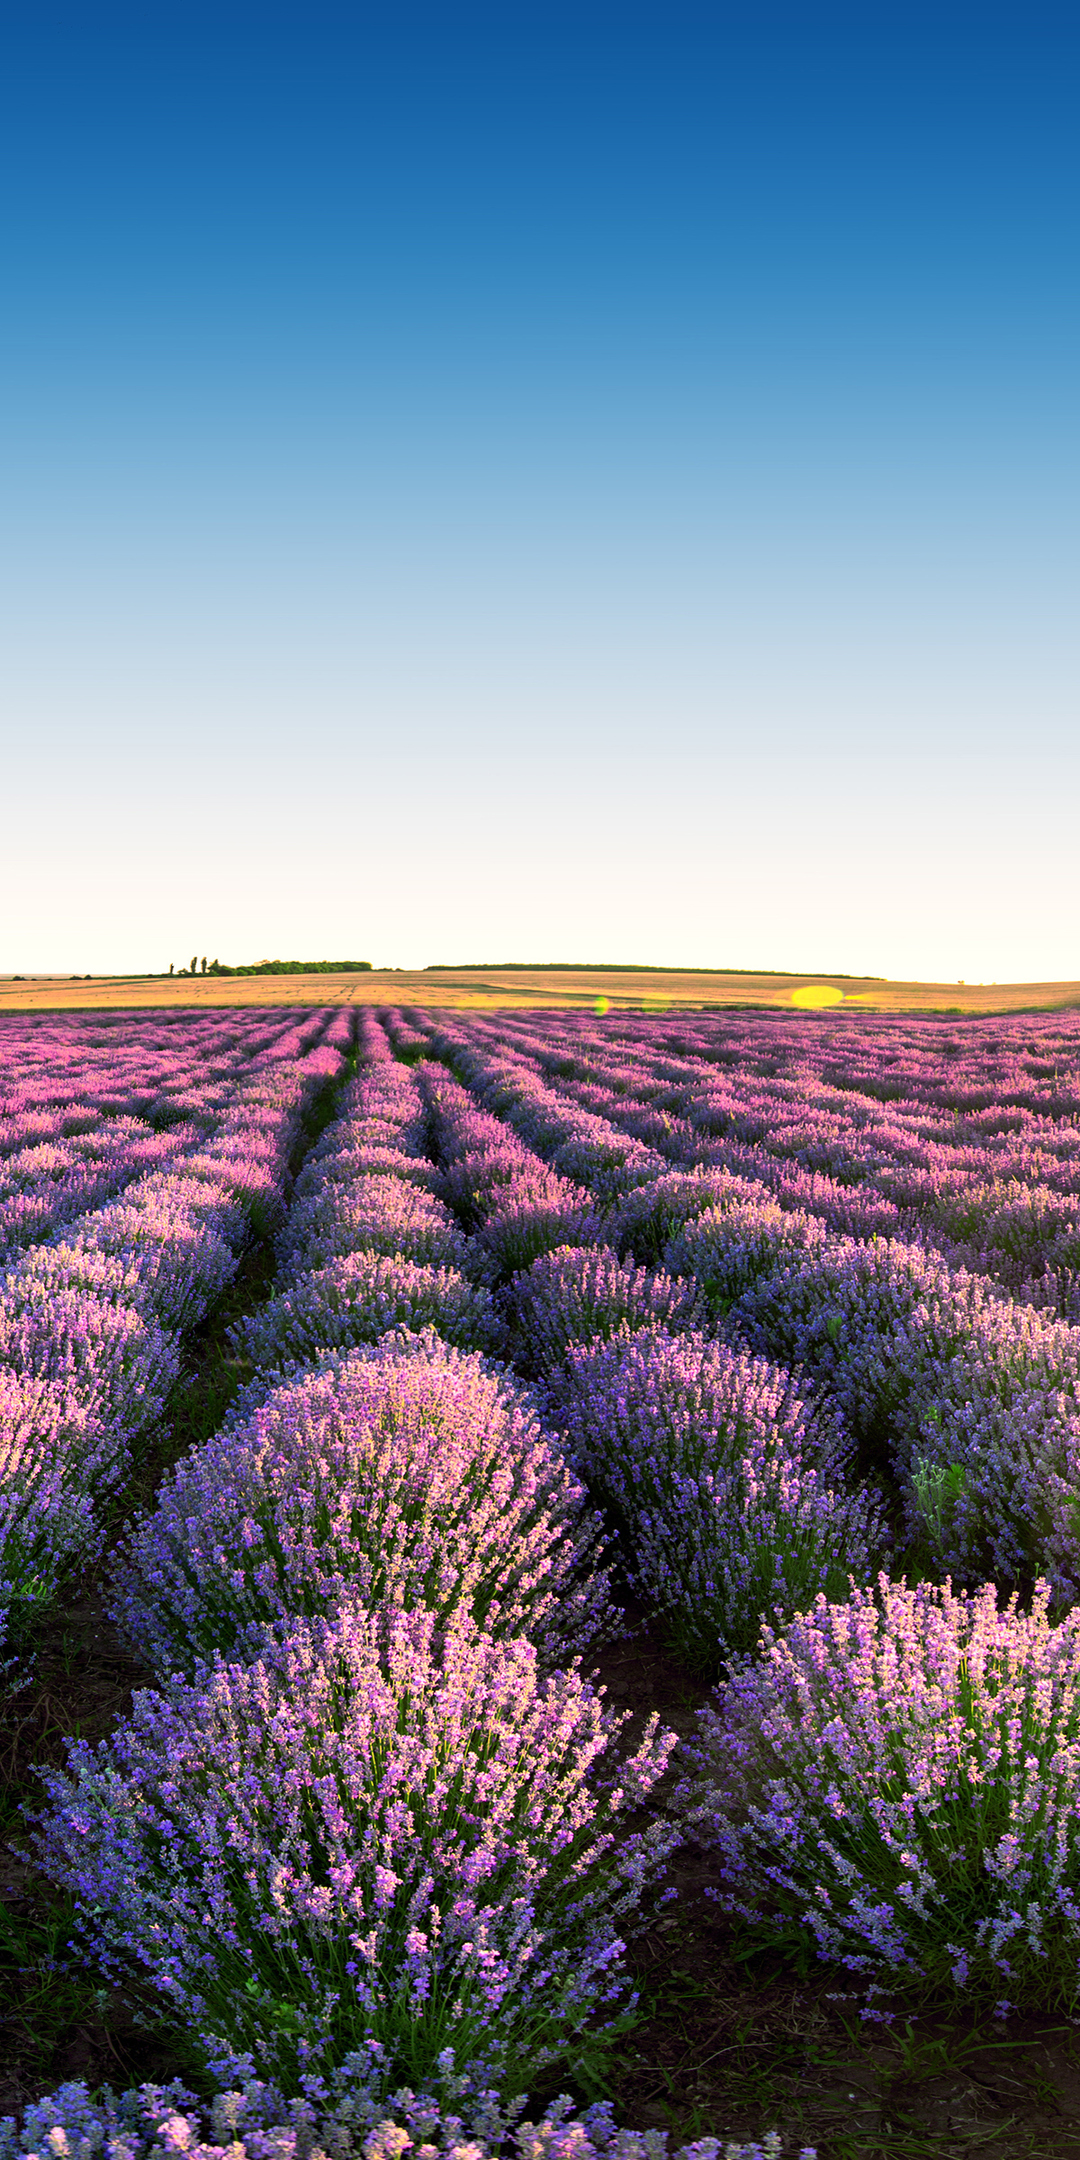 Download Lavender Fields, Nature, Sky, Sunrise, Scenery, Field, Flowers, Lavender, Fields Wallpaper in 1080x2160 Resolution